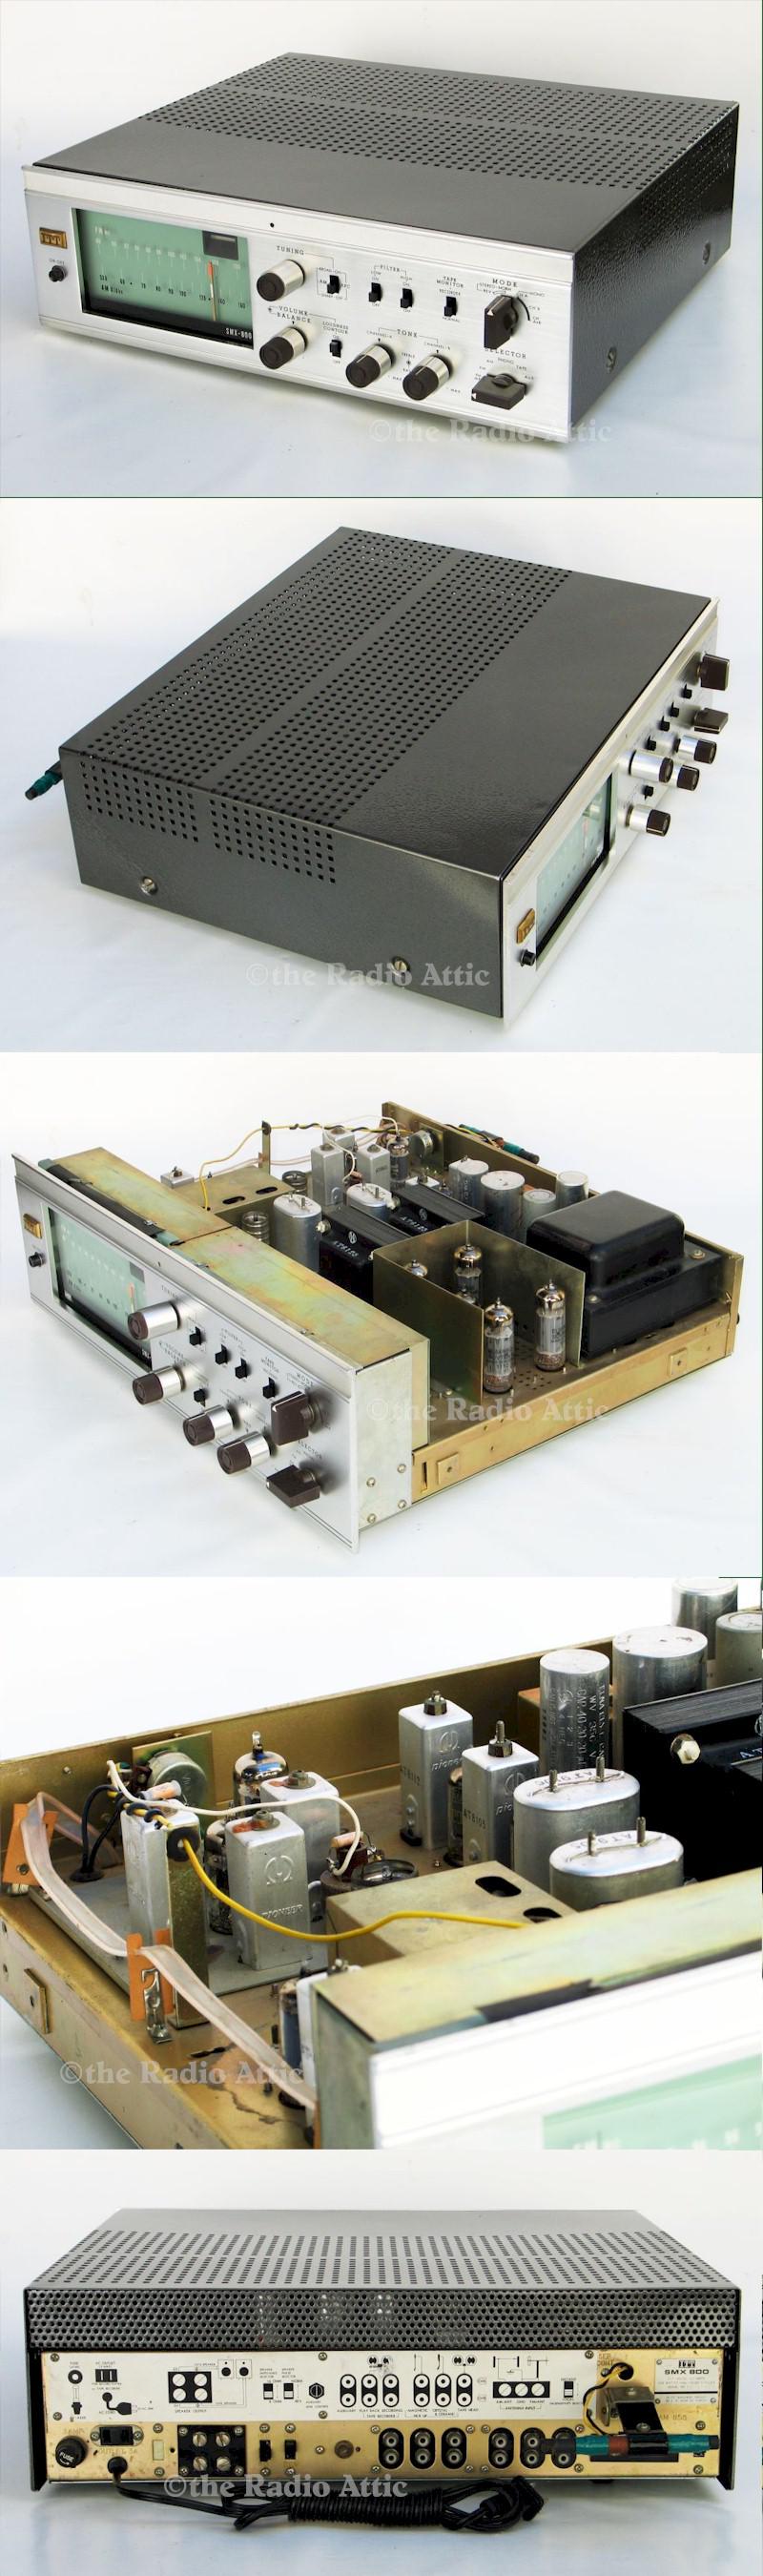 ITT SMX-800 AM/FM Stereo Receiver (1967)